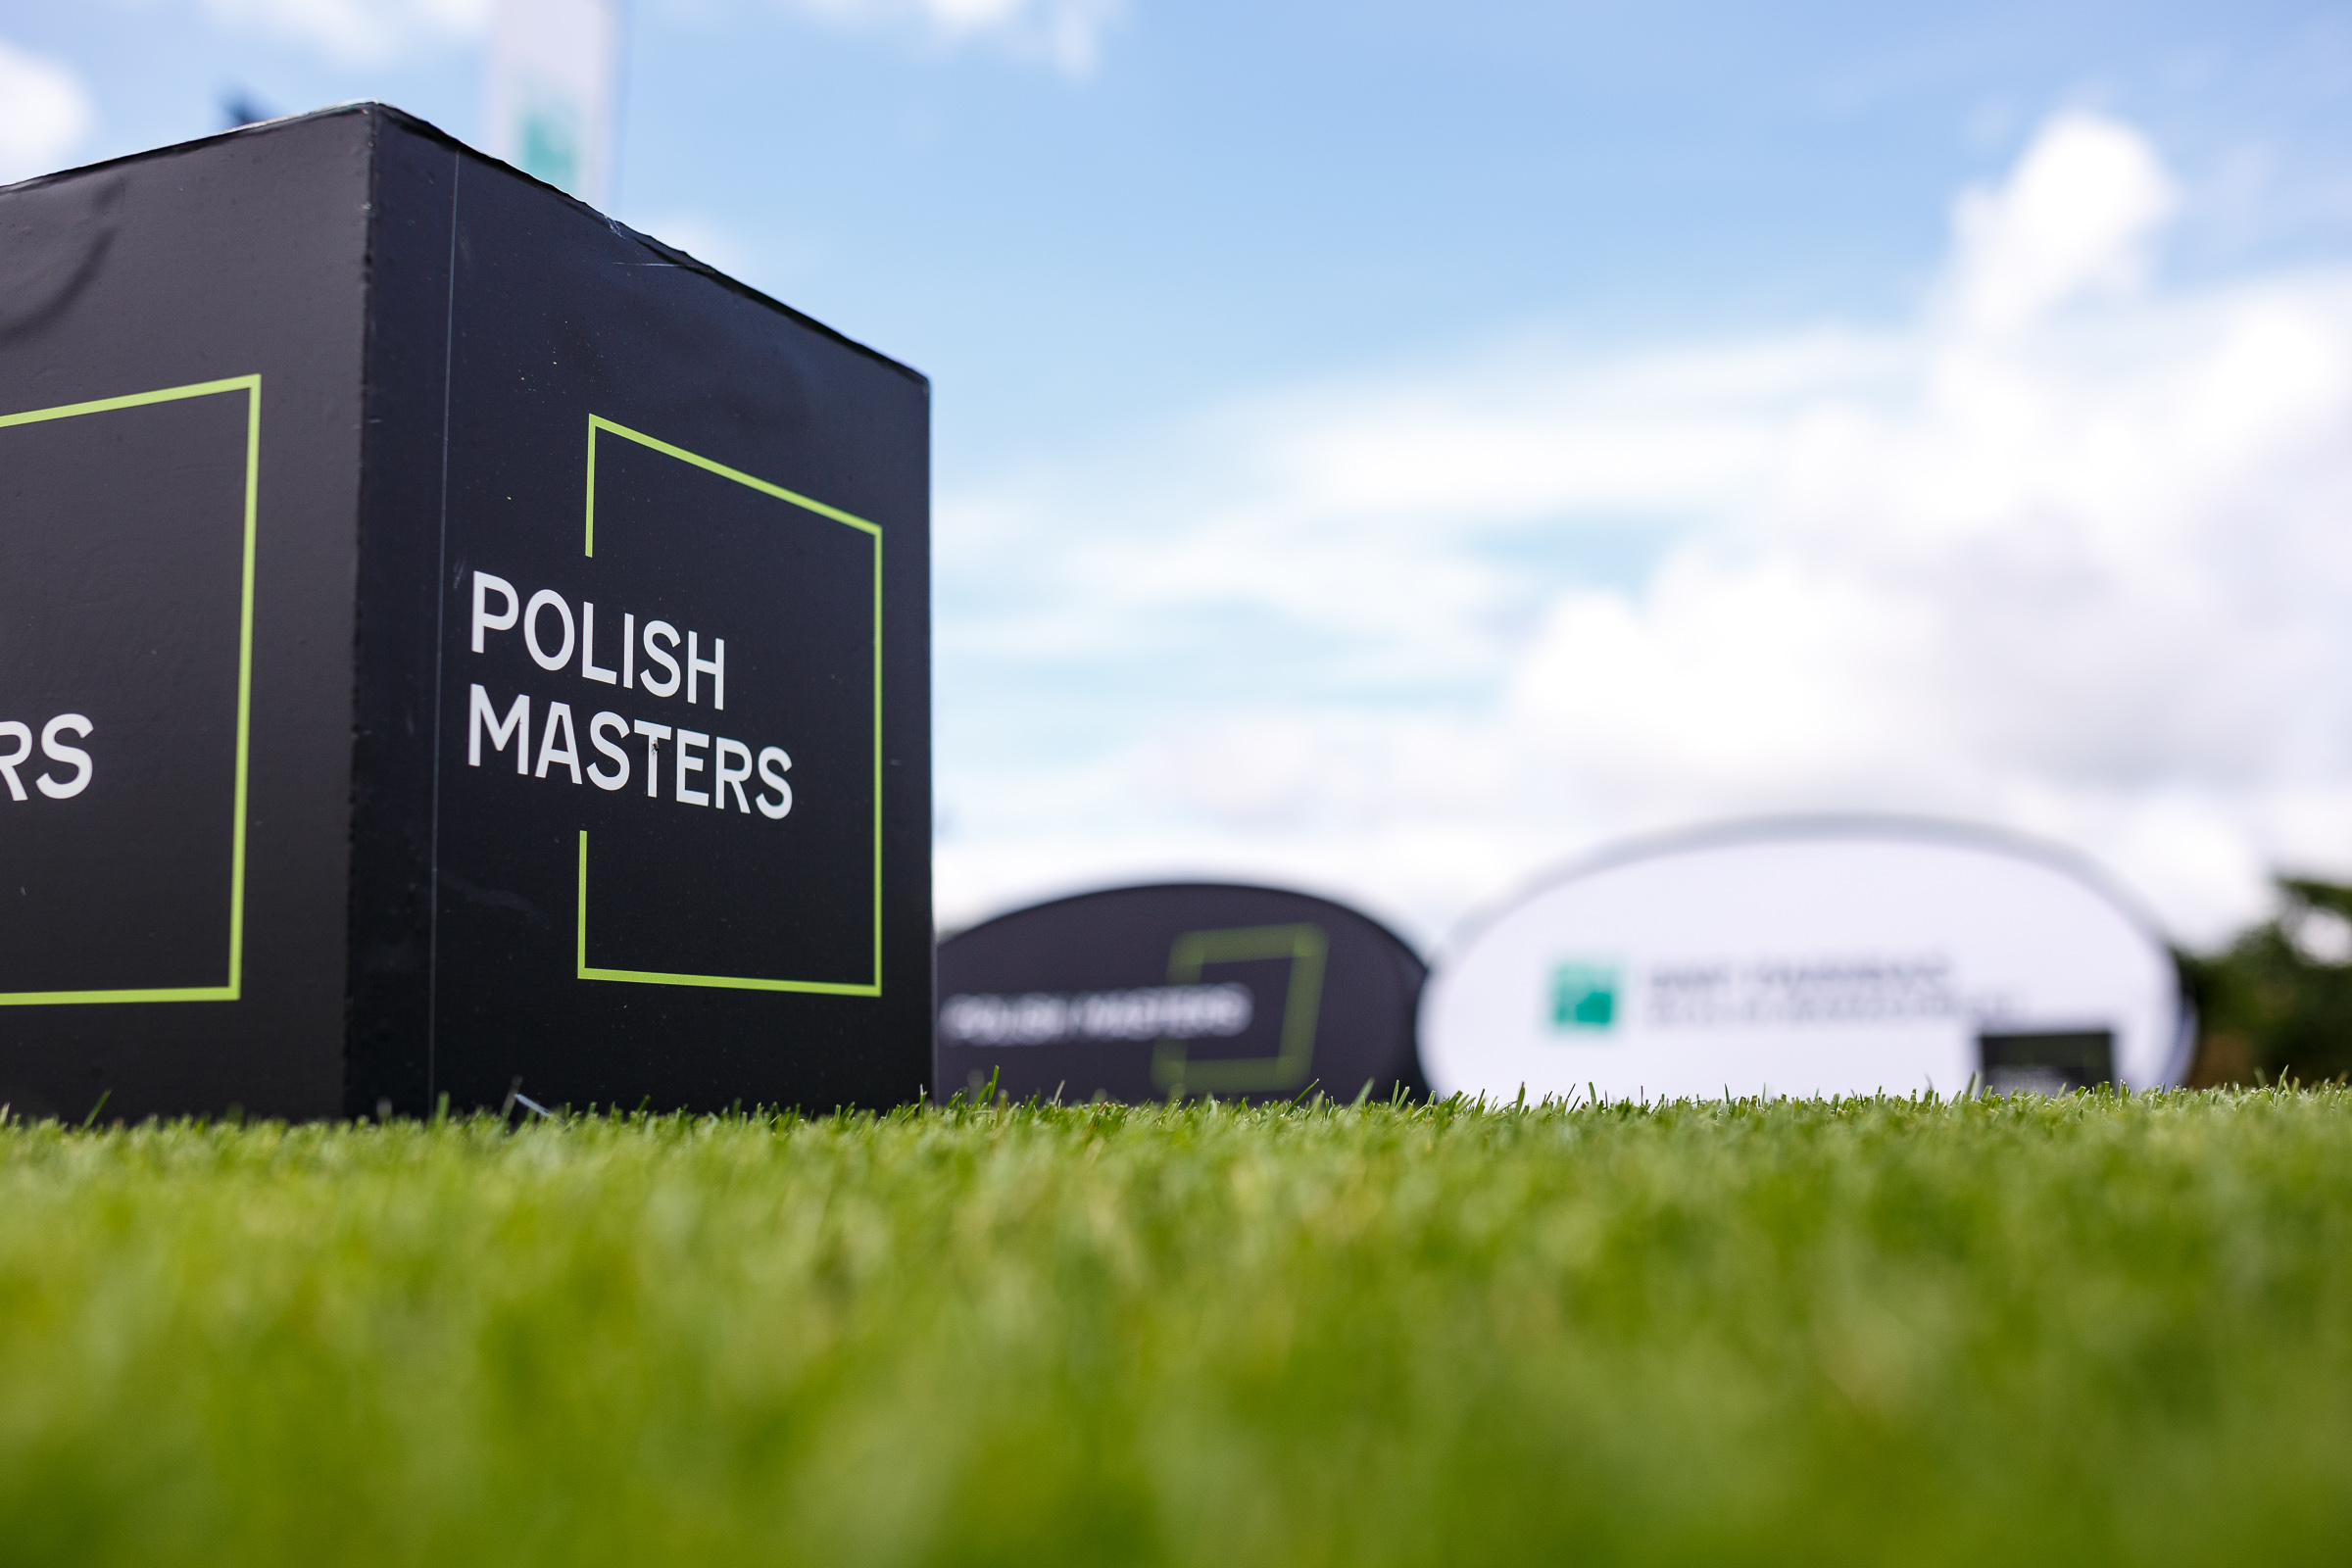 https://polishmasters.pl/szosty-turniej-eliminacyjny-polish-masters-2022-black-water-links-relacja/